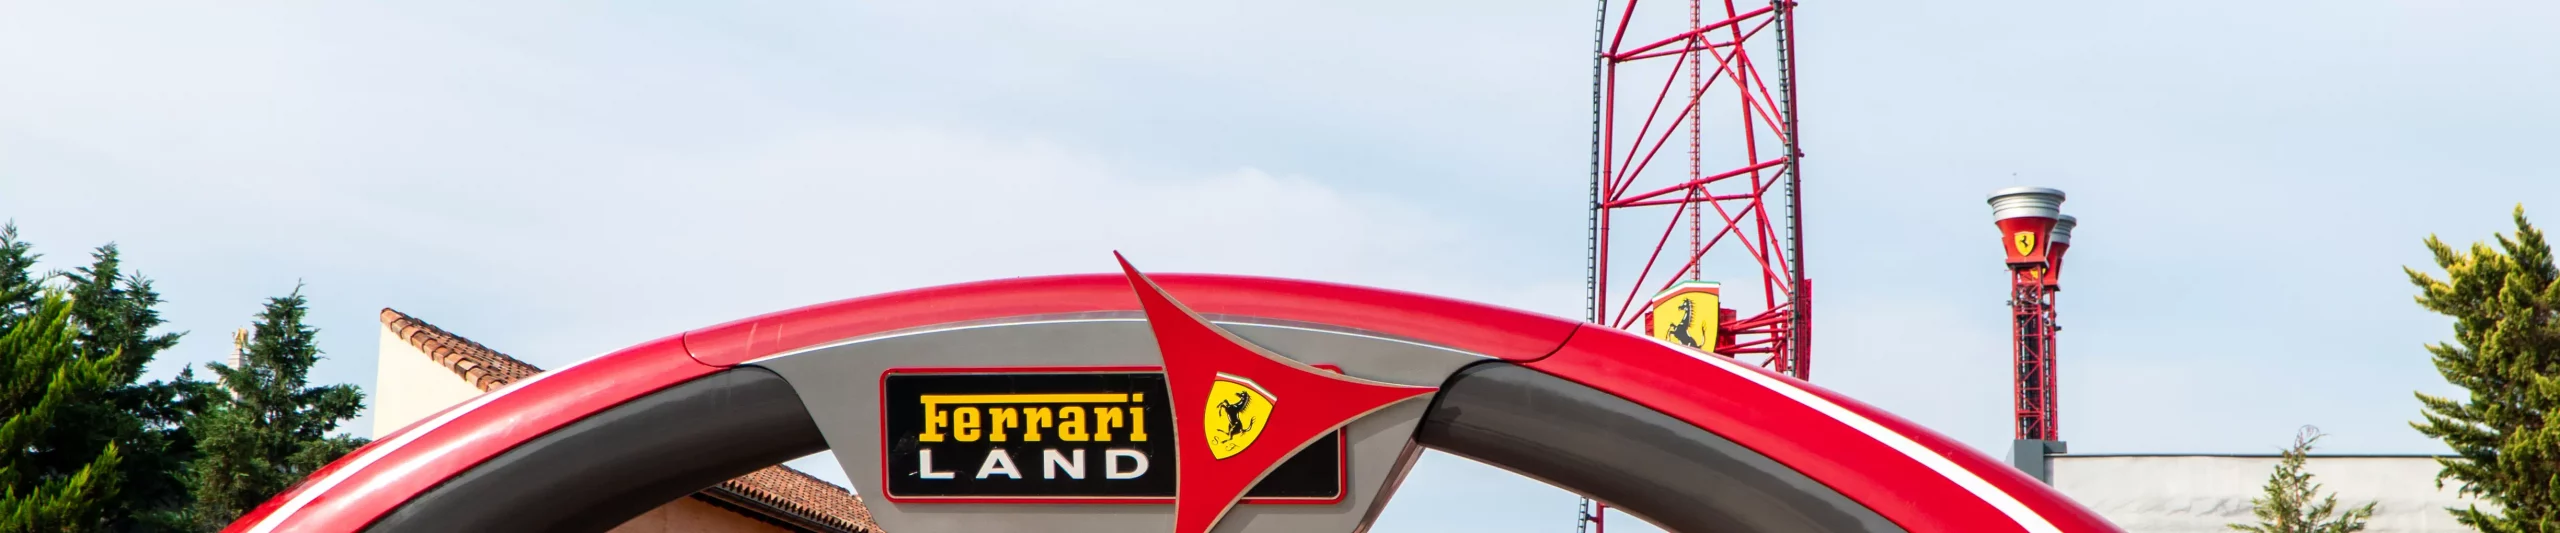 Kategorie: Ferrari Land